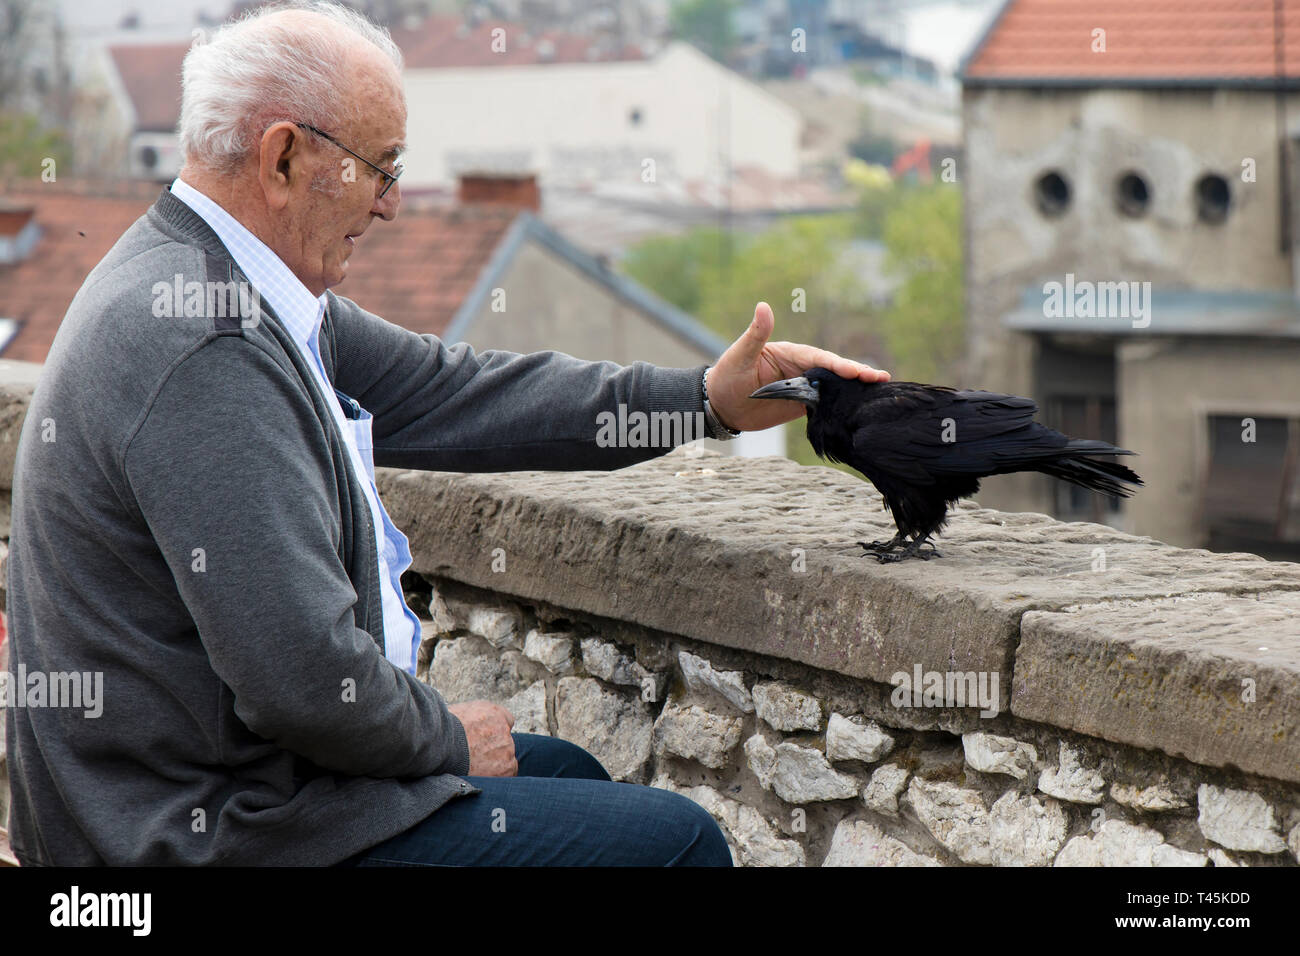 Belgrade, Serbie - Avril 9, 2019 : Lonely man assise seule sur un banc de la ville et de caresser un corbeau ou oiseau corbeau Banque D'Images